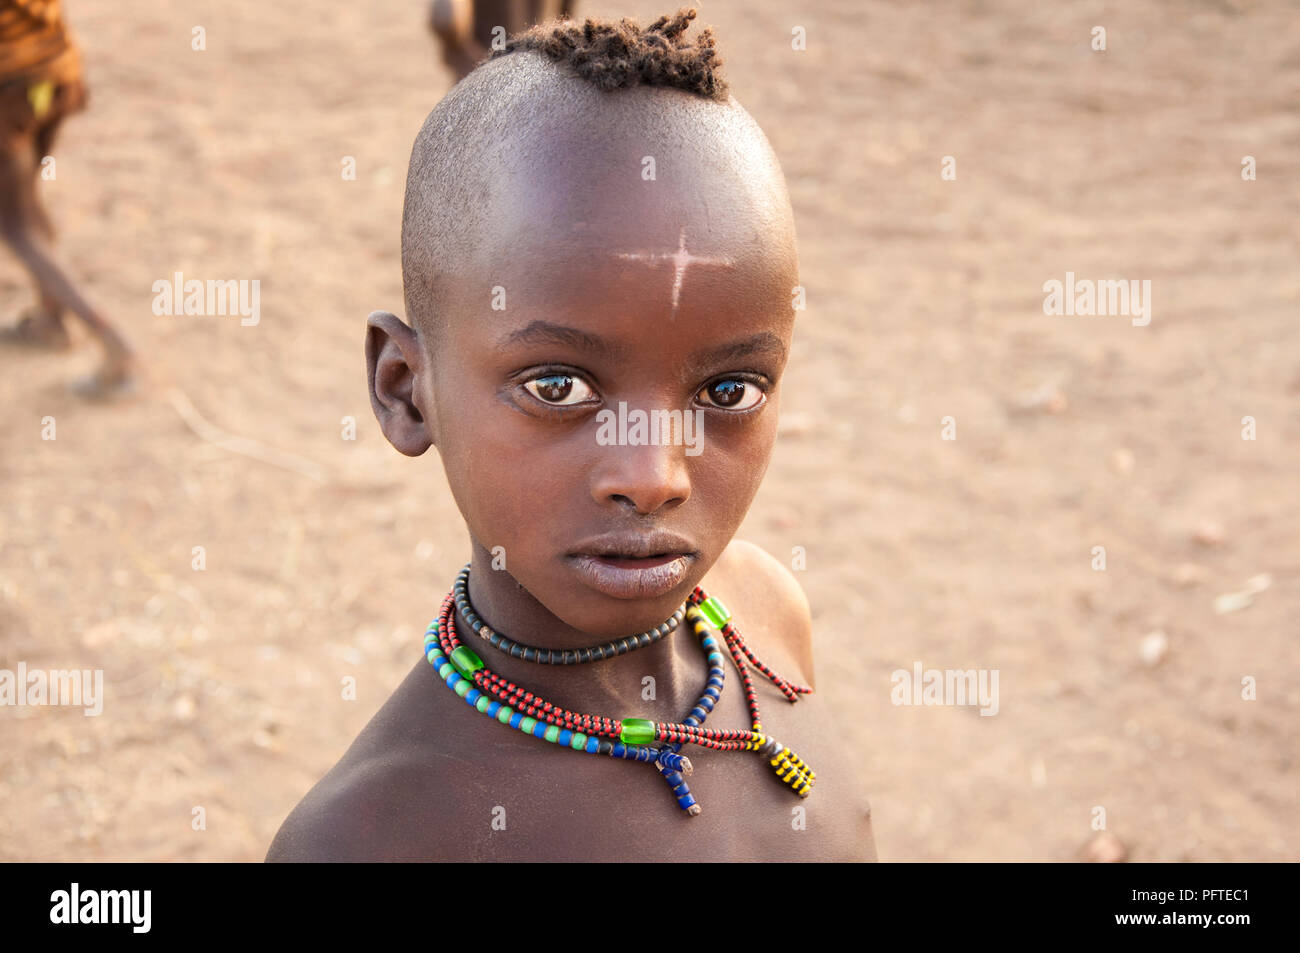 Schonen Jungen Afrikanischen Jungen Mit Traditionellen Halsketten Mysterioses Kreuz Auf Der Stirn Von Hamar Stamm Neugierig Mit Markanten Glanzende Augen Stockfotografie Alamy